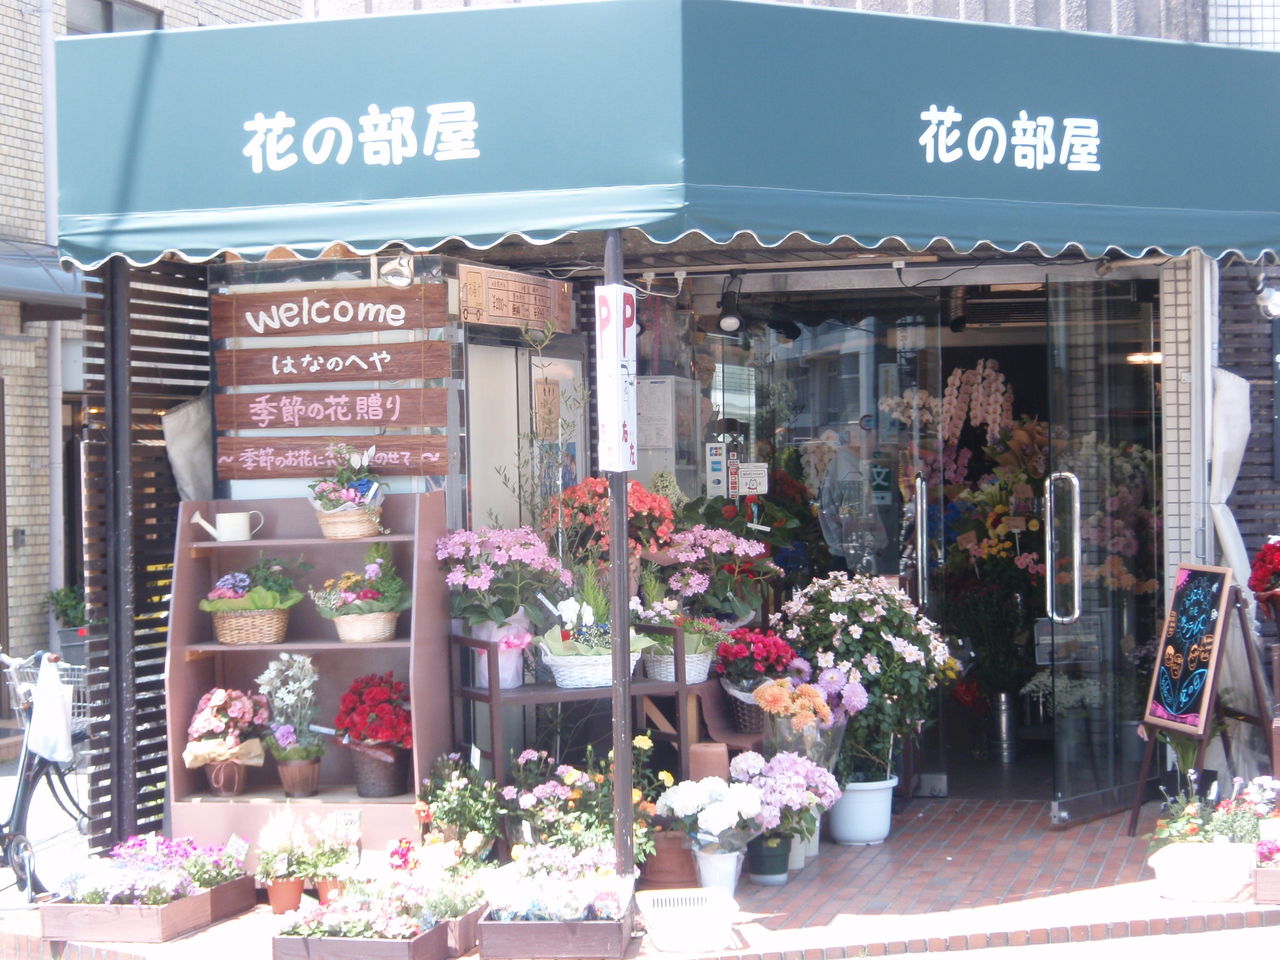 ガンバブルーなお花をあなたに 花の部屋 青黒アシスト商店街 ほくせつ青黒つーしん ほくつー ガンバ大阪でホームタウンを盛り上げるための情報サイト